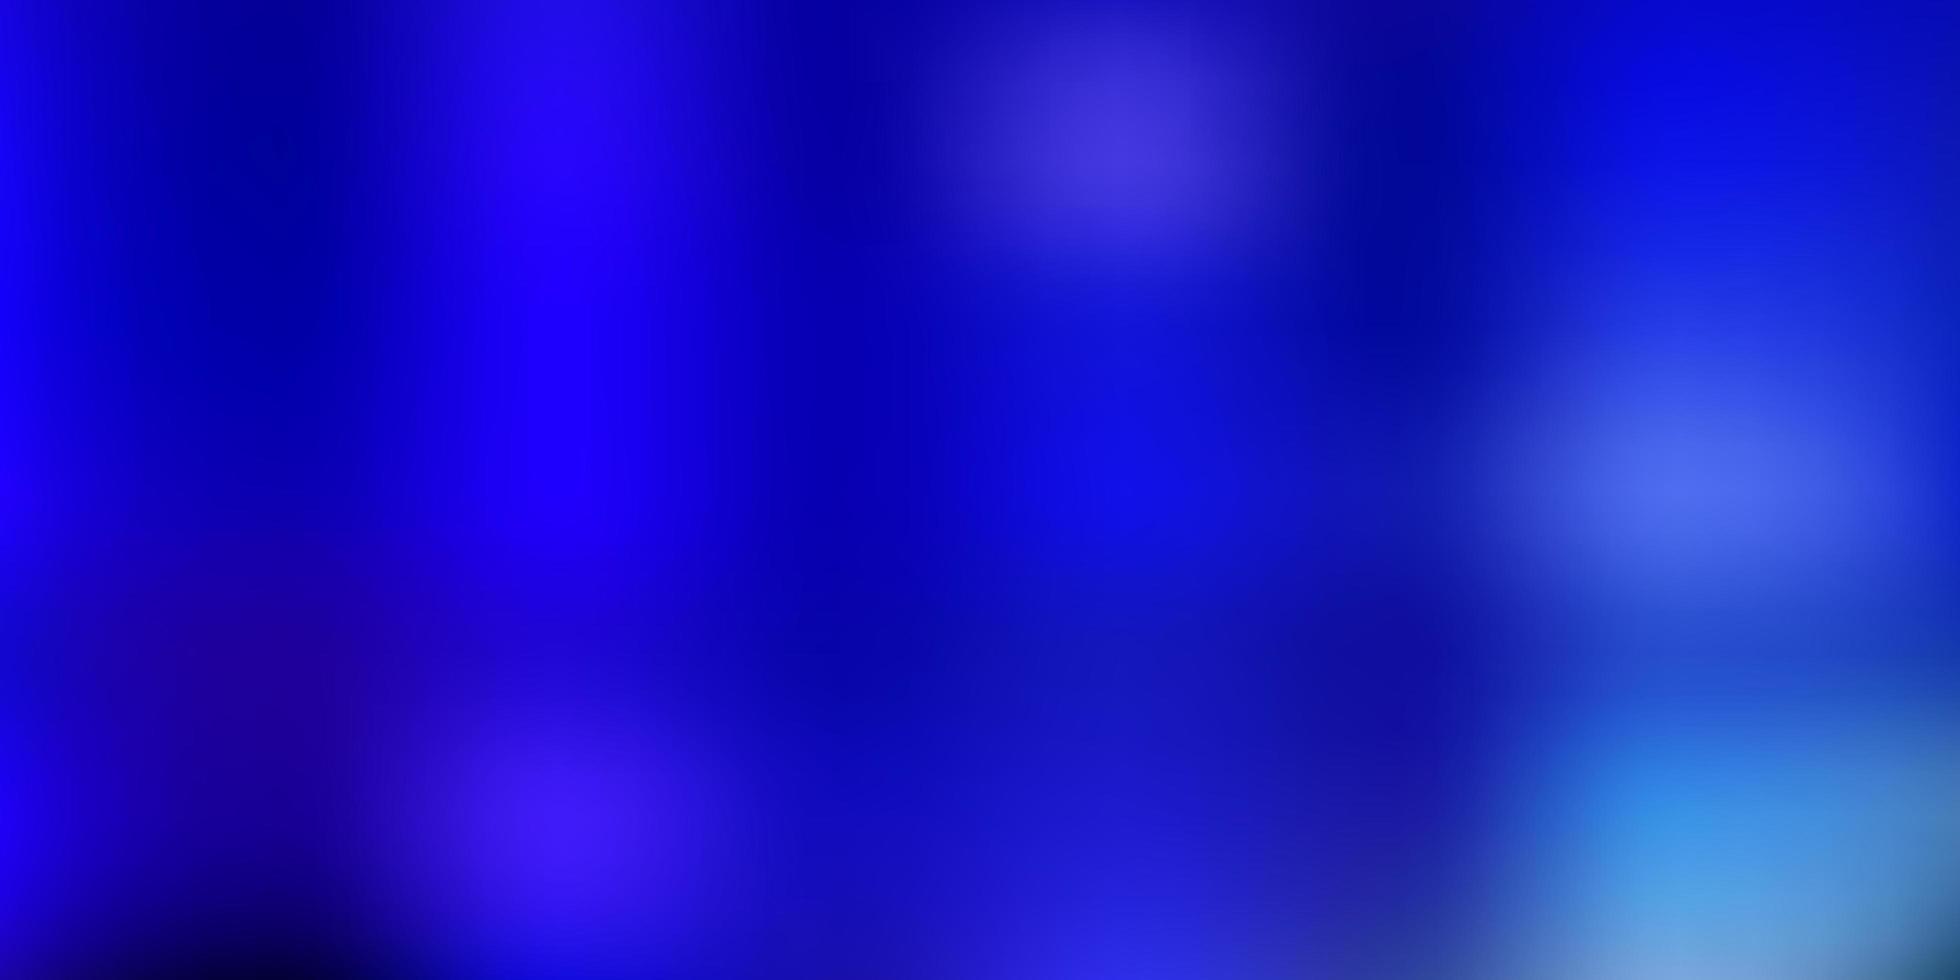 Light blue green vector abstract blur texture